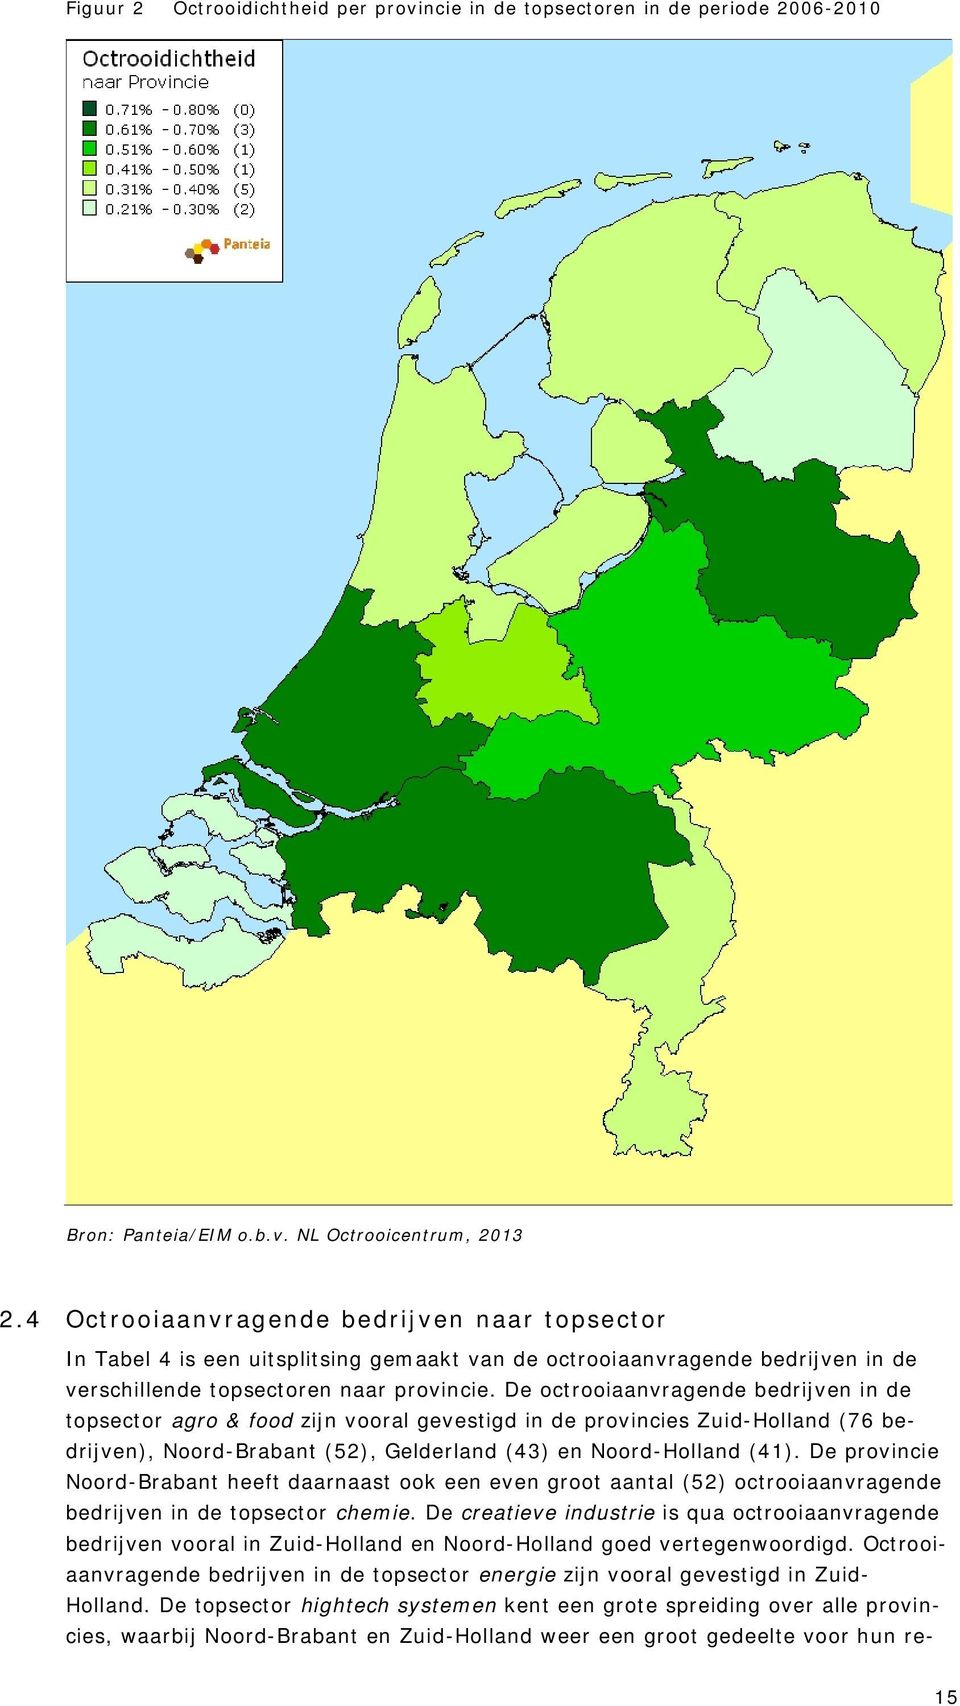 De octrooiaanvragende bedrijven in de topsector agro & food zijn vooral gevestigd in de provincies Zuid-Holland (76 bedrijven), Noord-Brabant (52), Gelderland (43) en Noord-Holland (41).